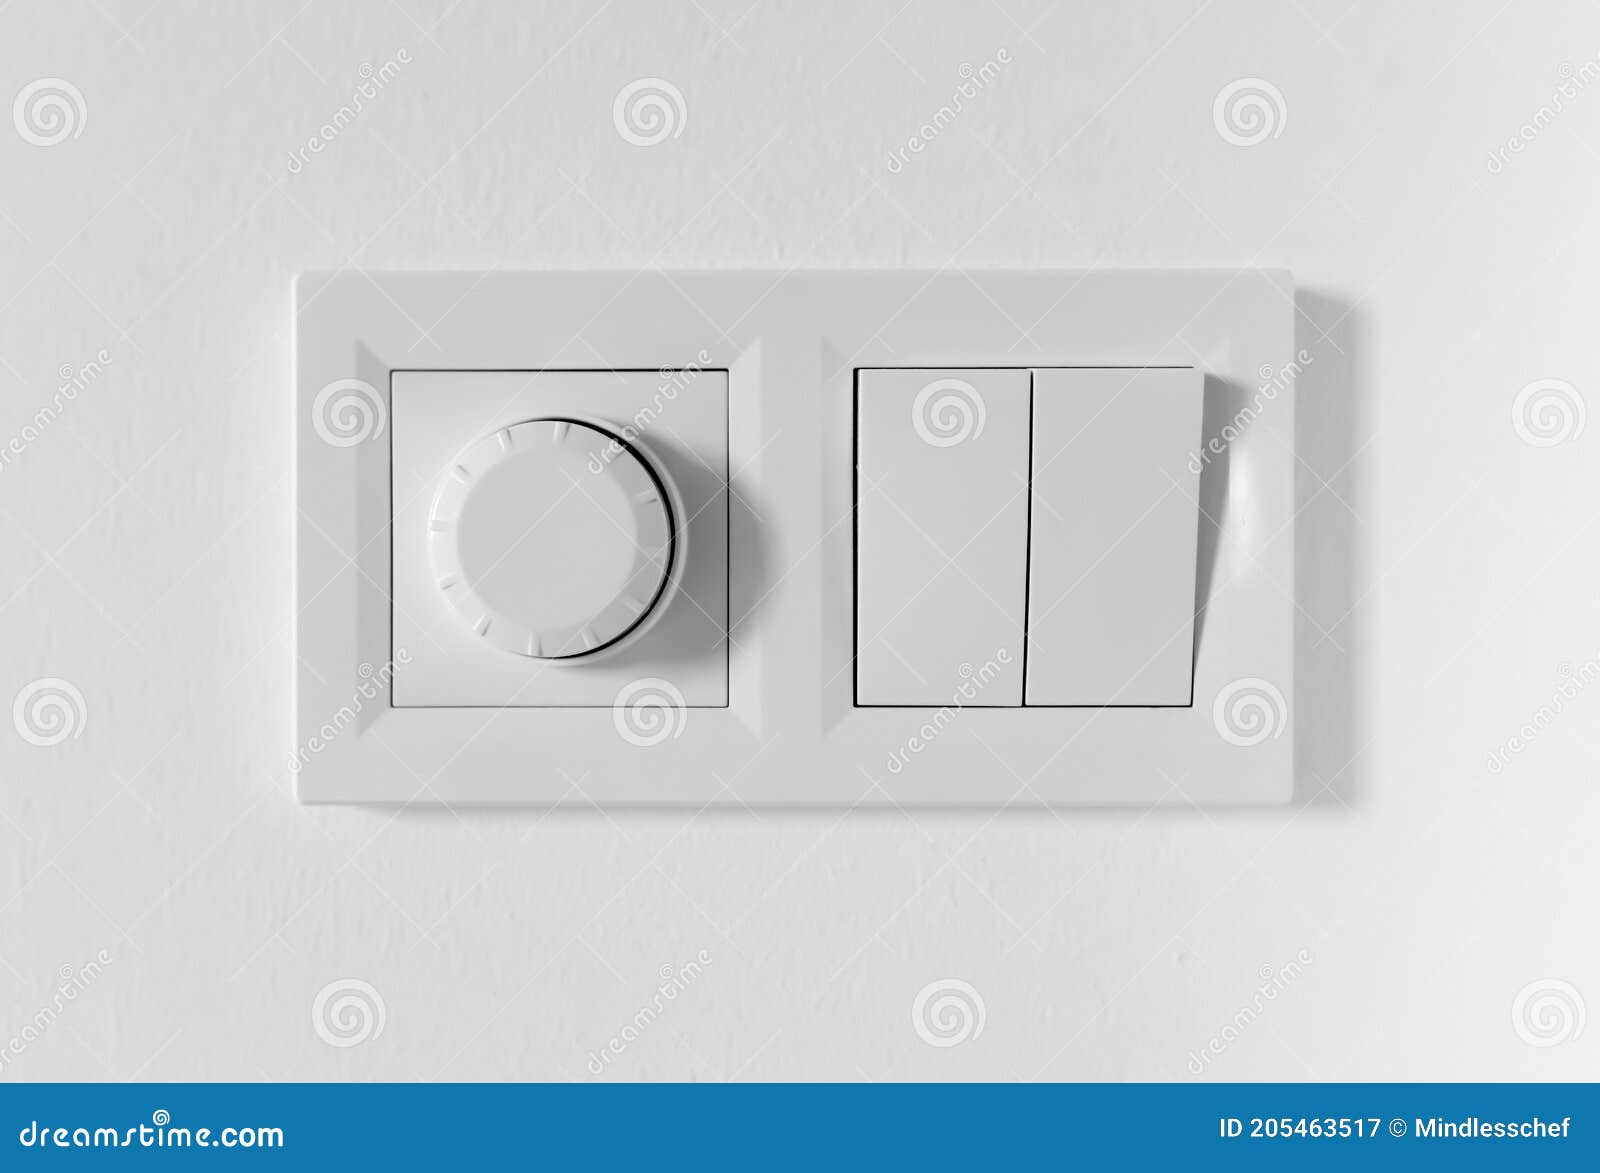 Interruptor de pared doble interruptor interruptor de luz encendido/apagado ip44 gris 152-08 DV 8196 